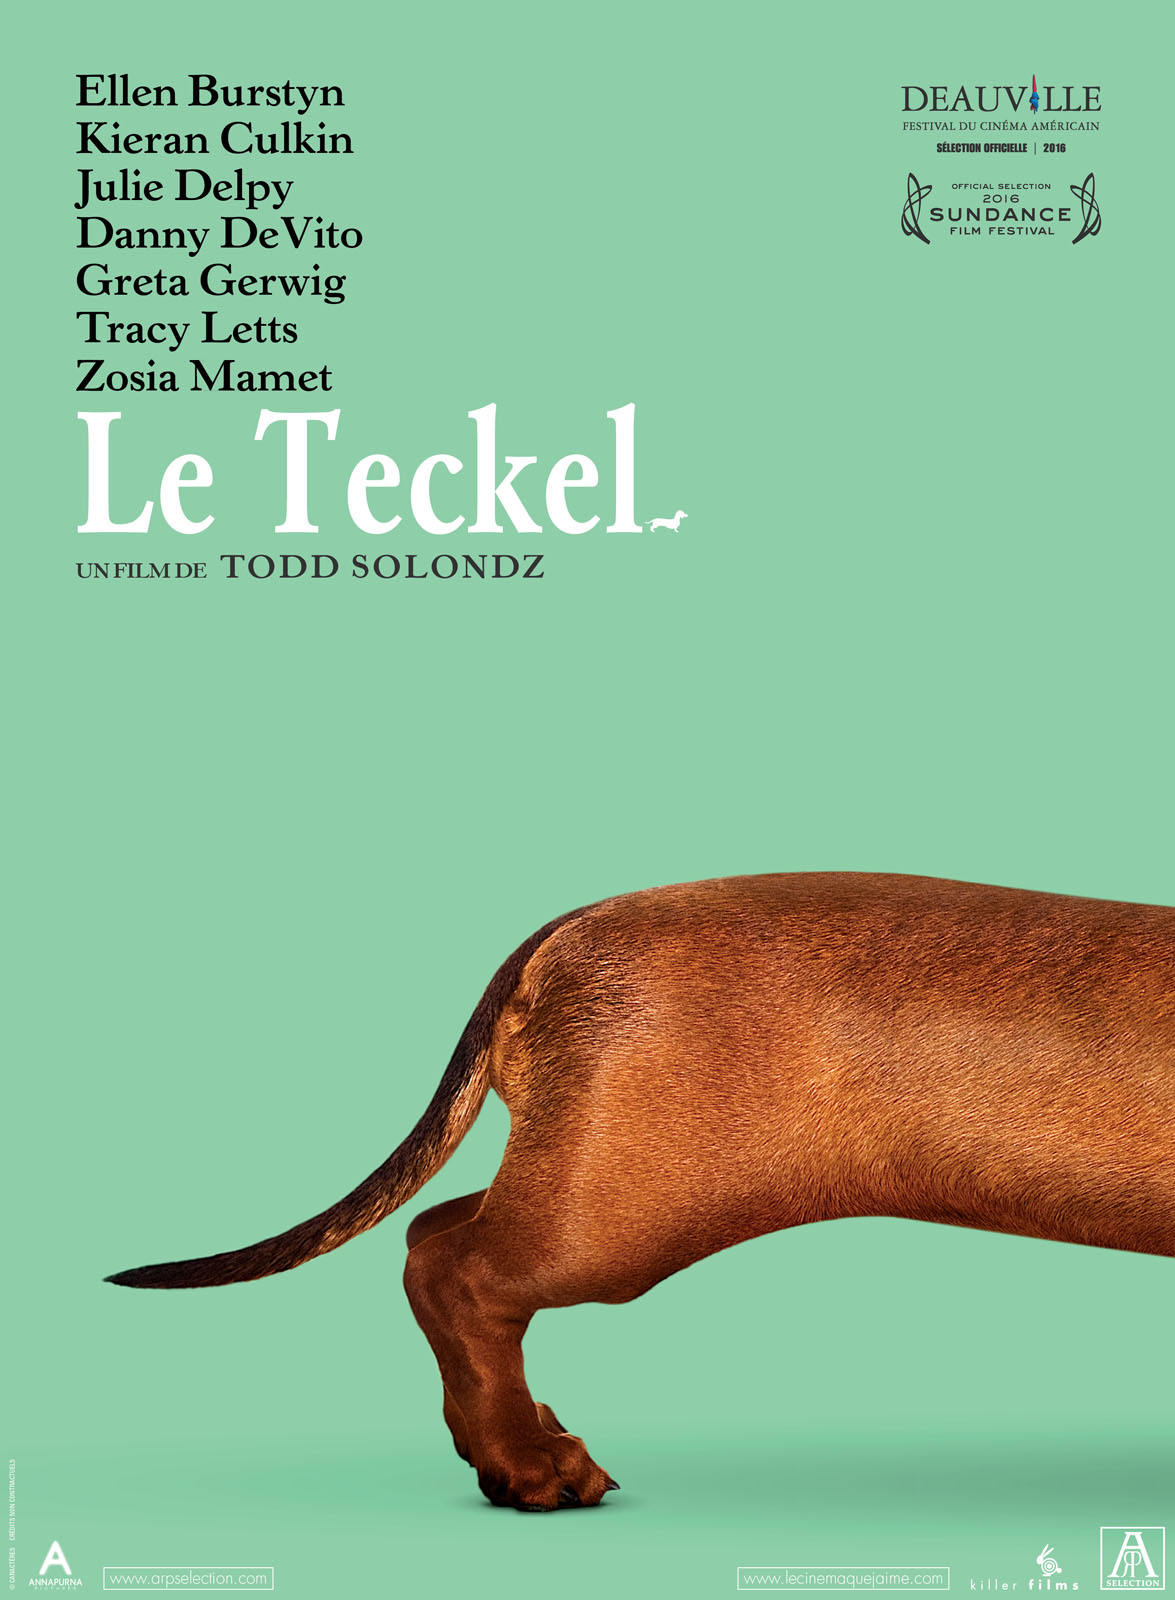 Le Teckel, un film de Todd Solondz